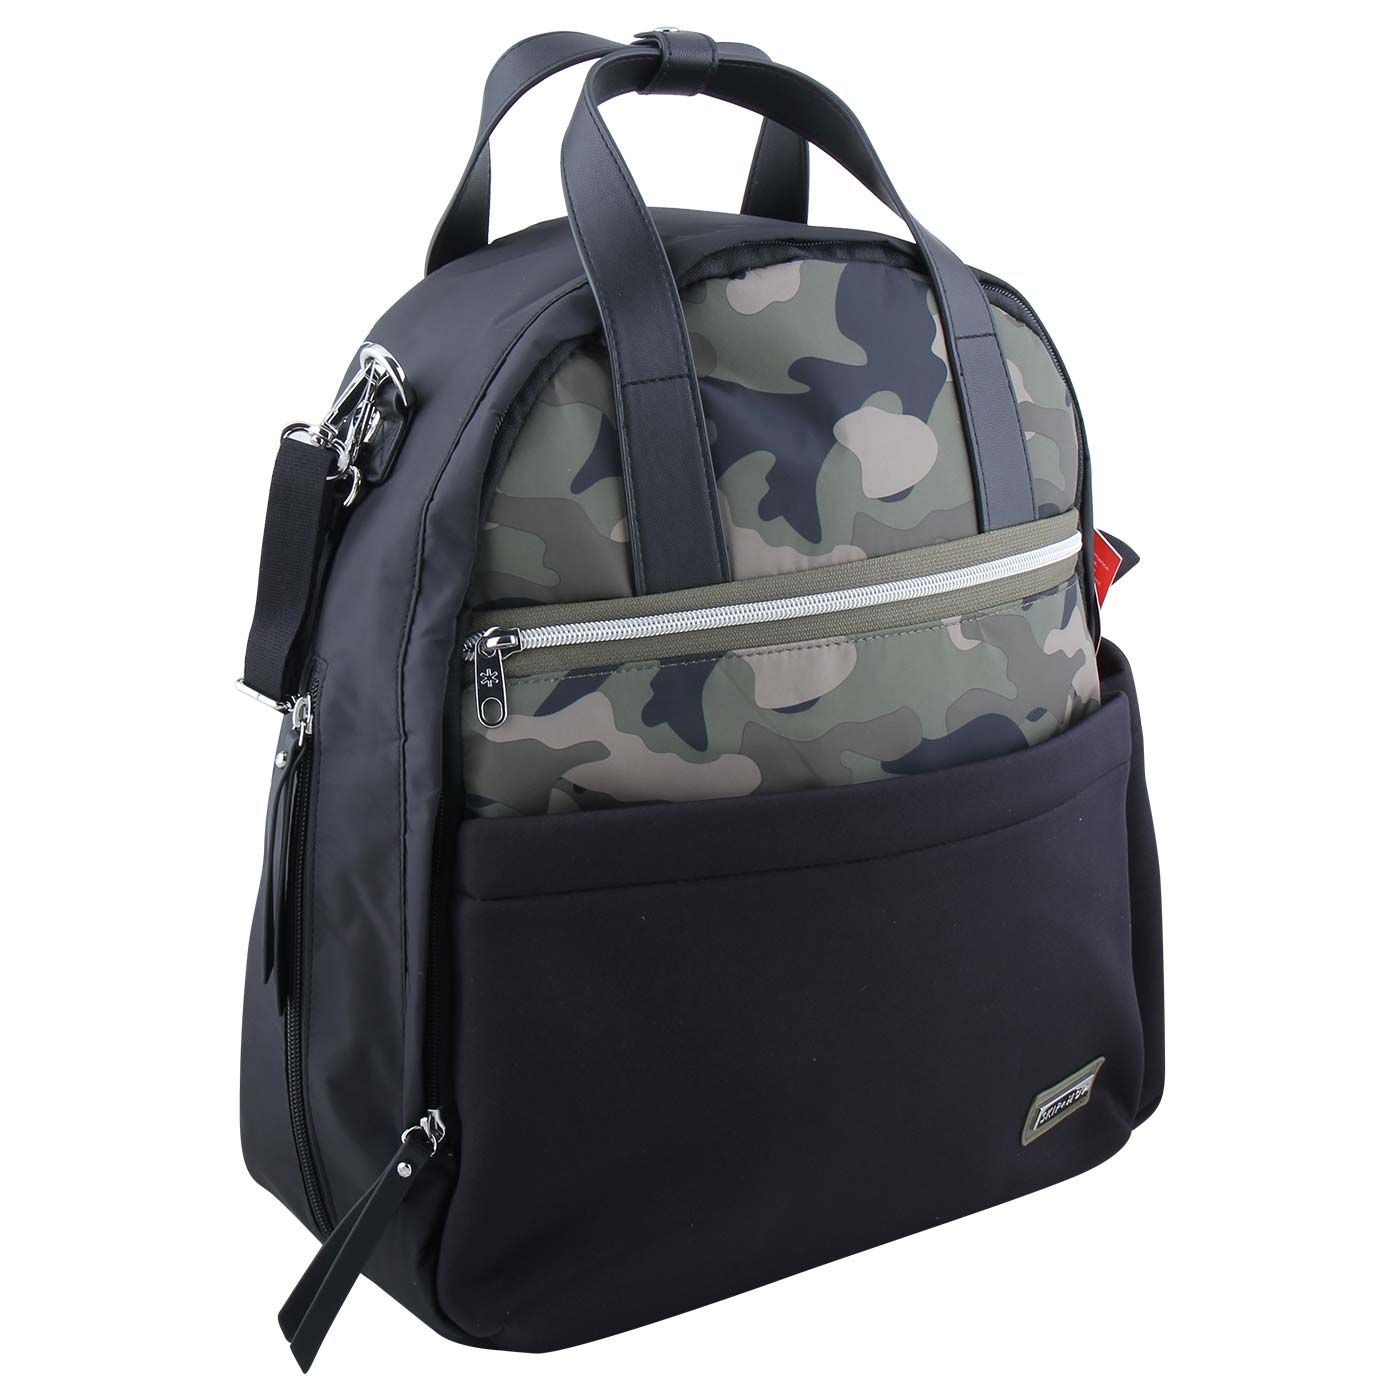 Skiphop Nolita Backpack Black/Camo - 2